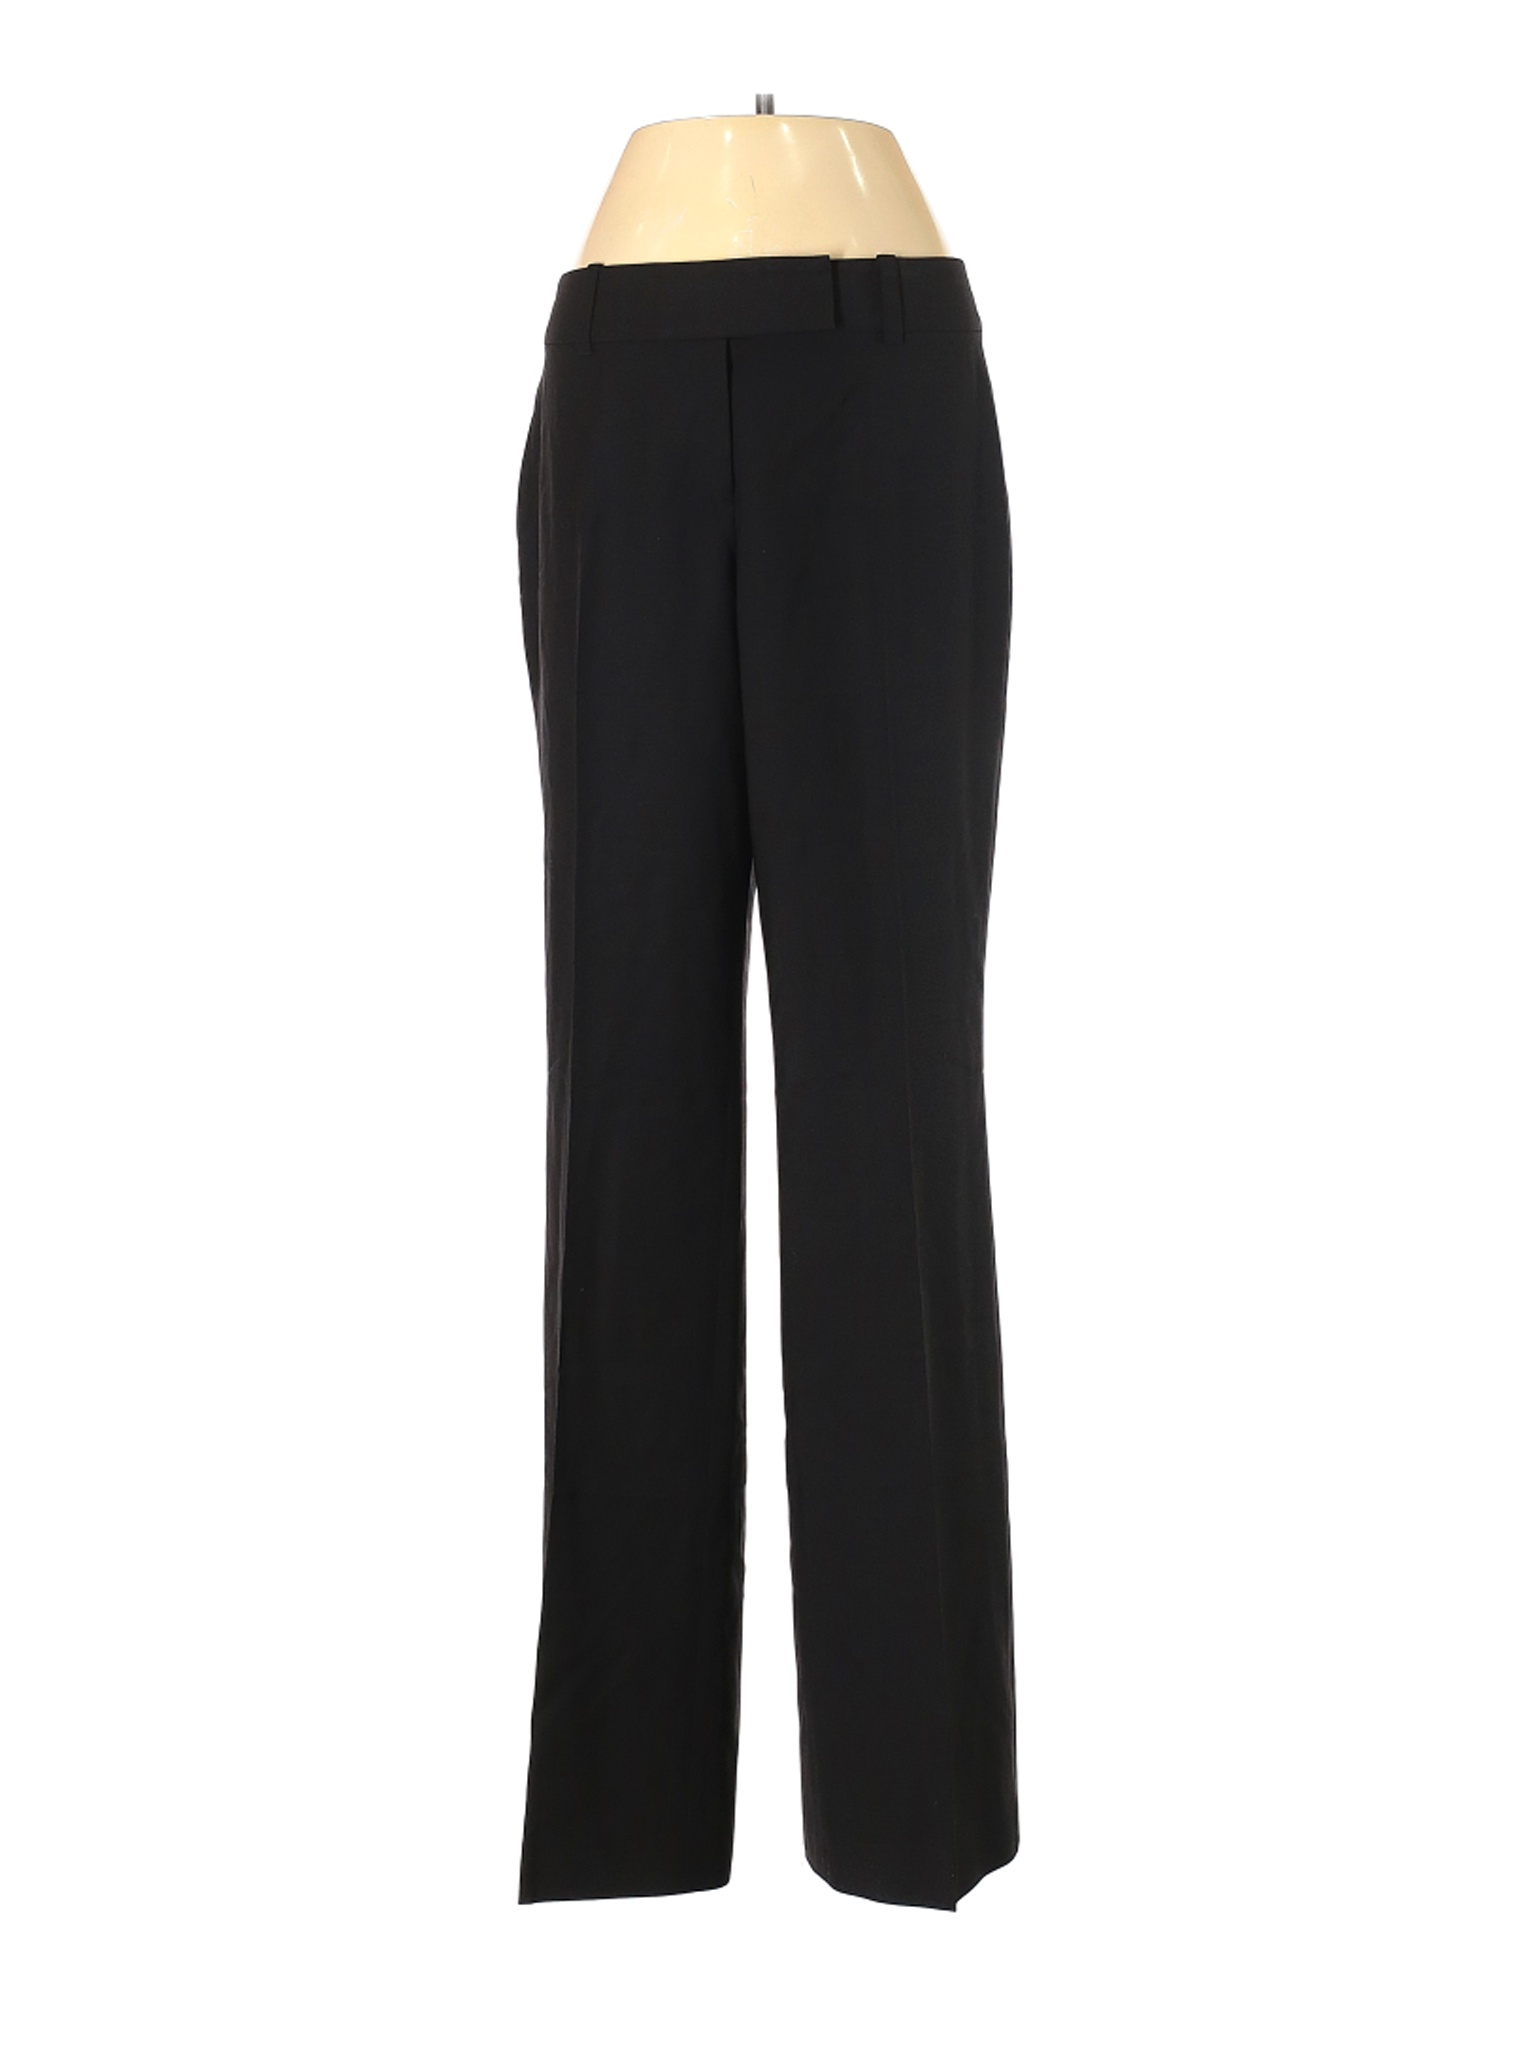 Ann Taylor Women Black Wool Pants 4 | eBay